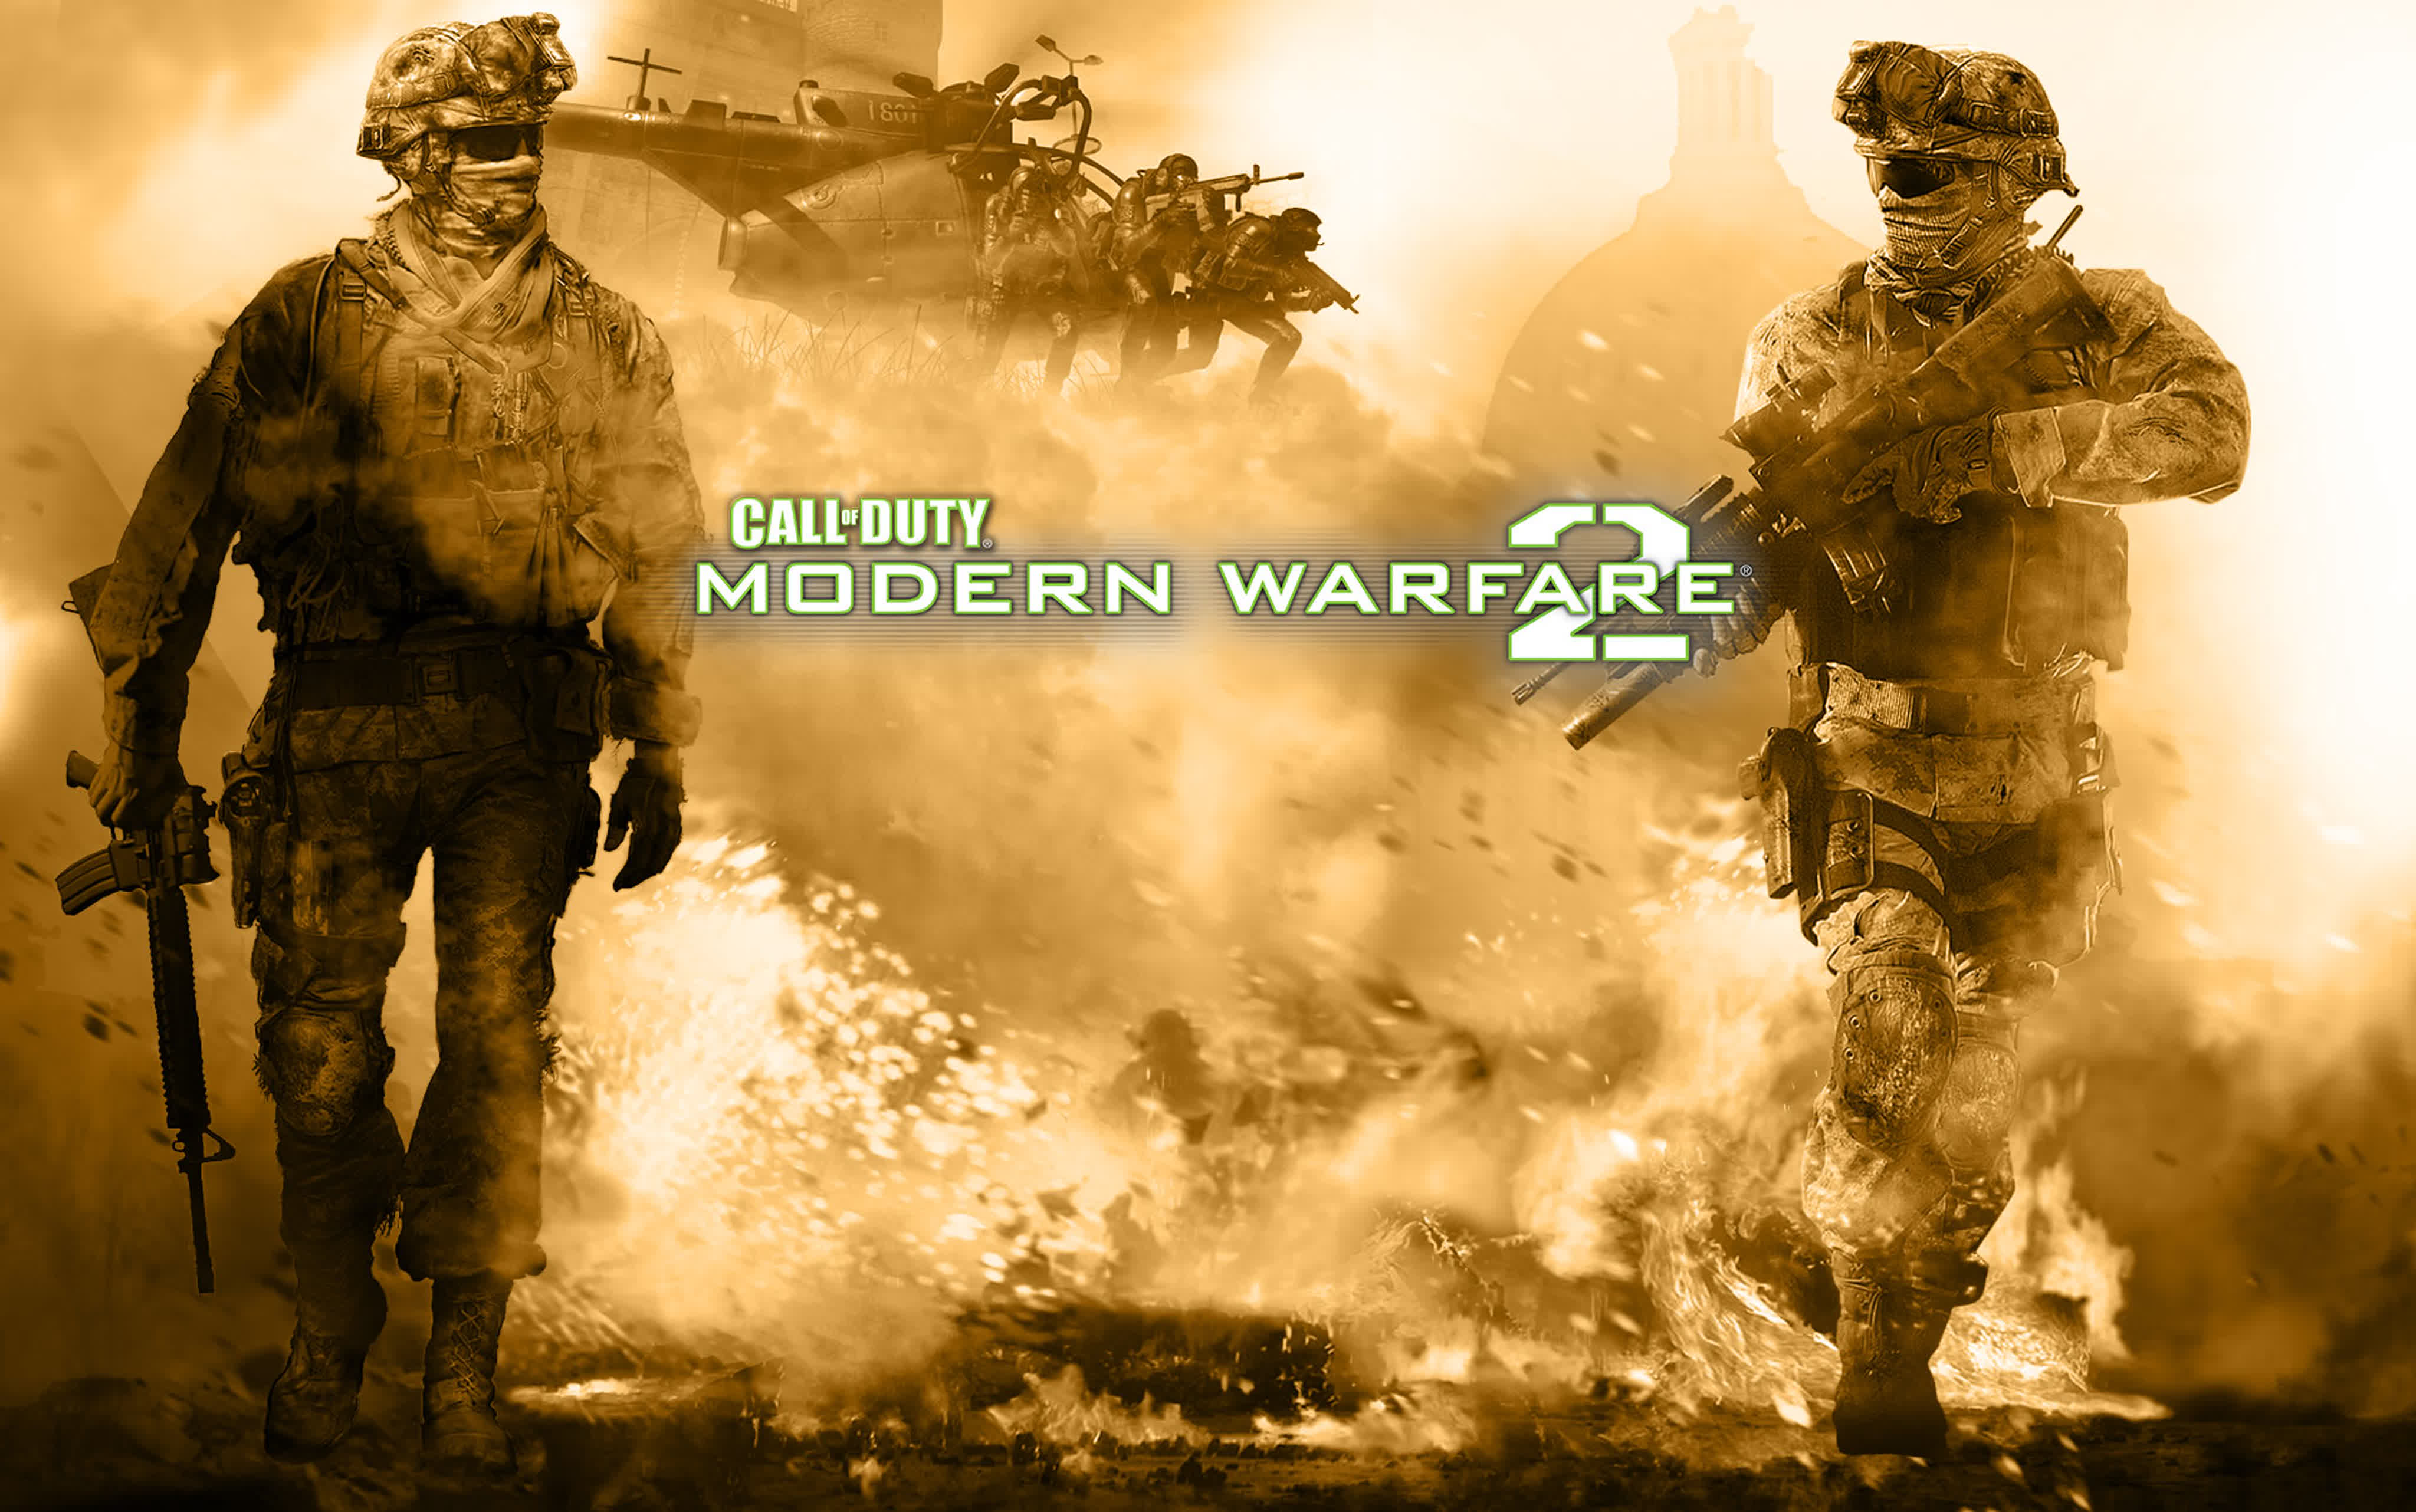 Call of Duty: Modern Warfare 2 - 1 СЕРИЯ ЧУМОВОГО ШУТЕРА от первого лица, приятного просмотра!!!